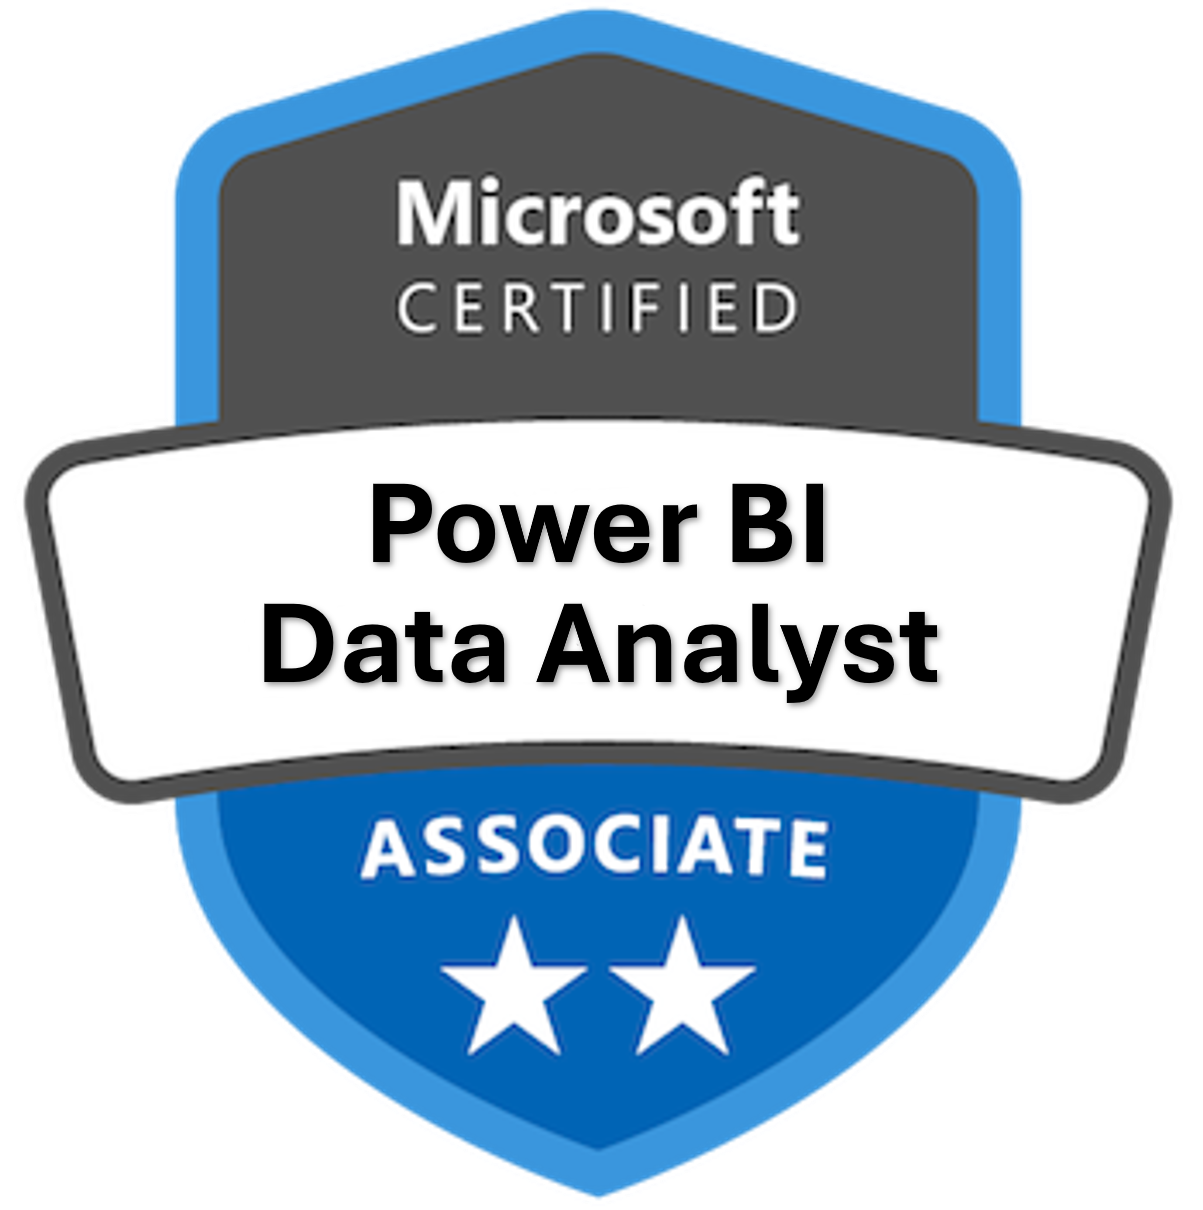 Power BI Data Analyst Badge